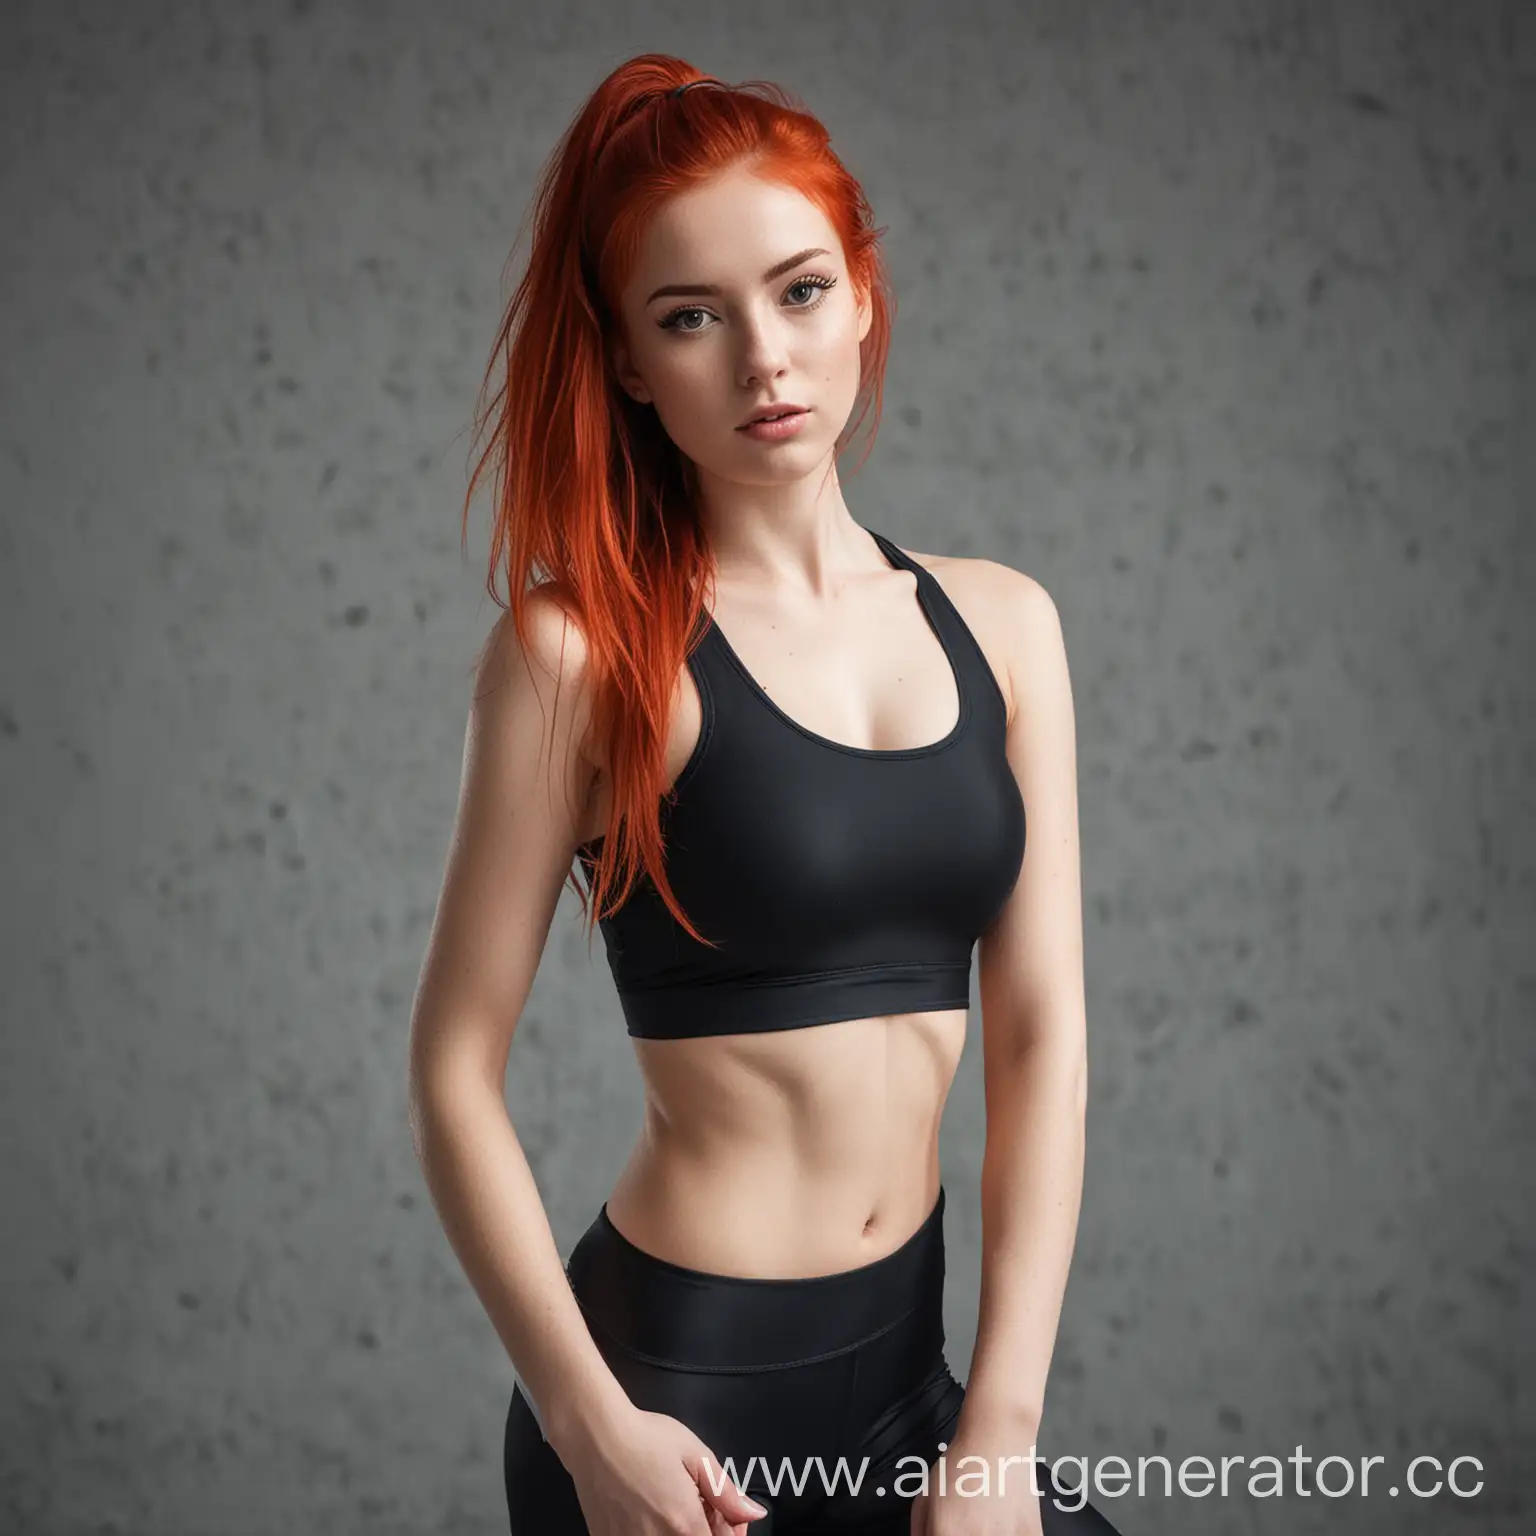 Athletic-Redhead-Girl-in-FormFitting-Sportswear